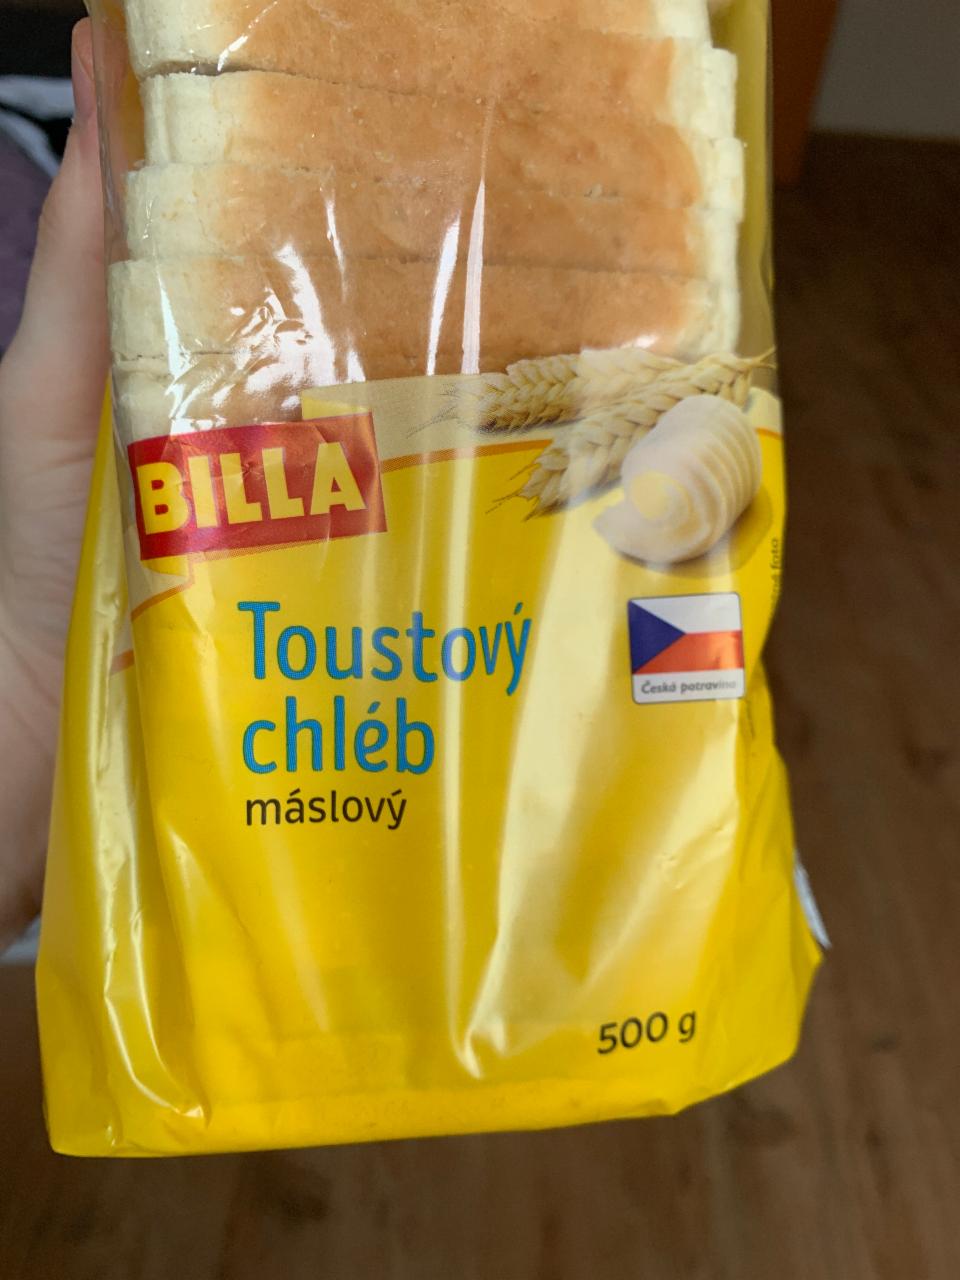 Фото - тостовый хлеб сливочный Billa